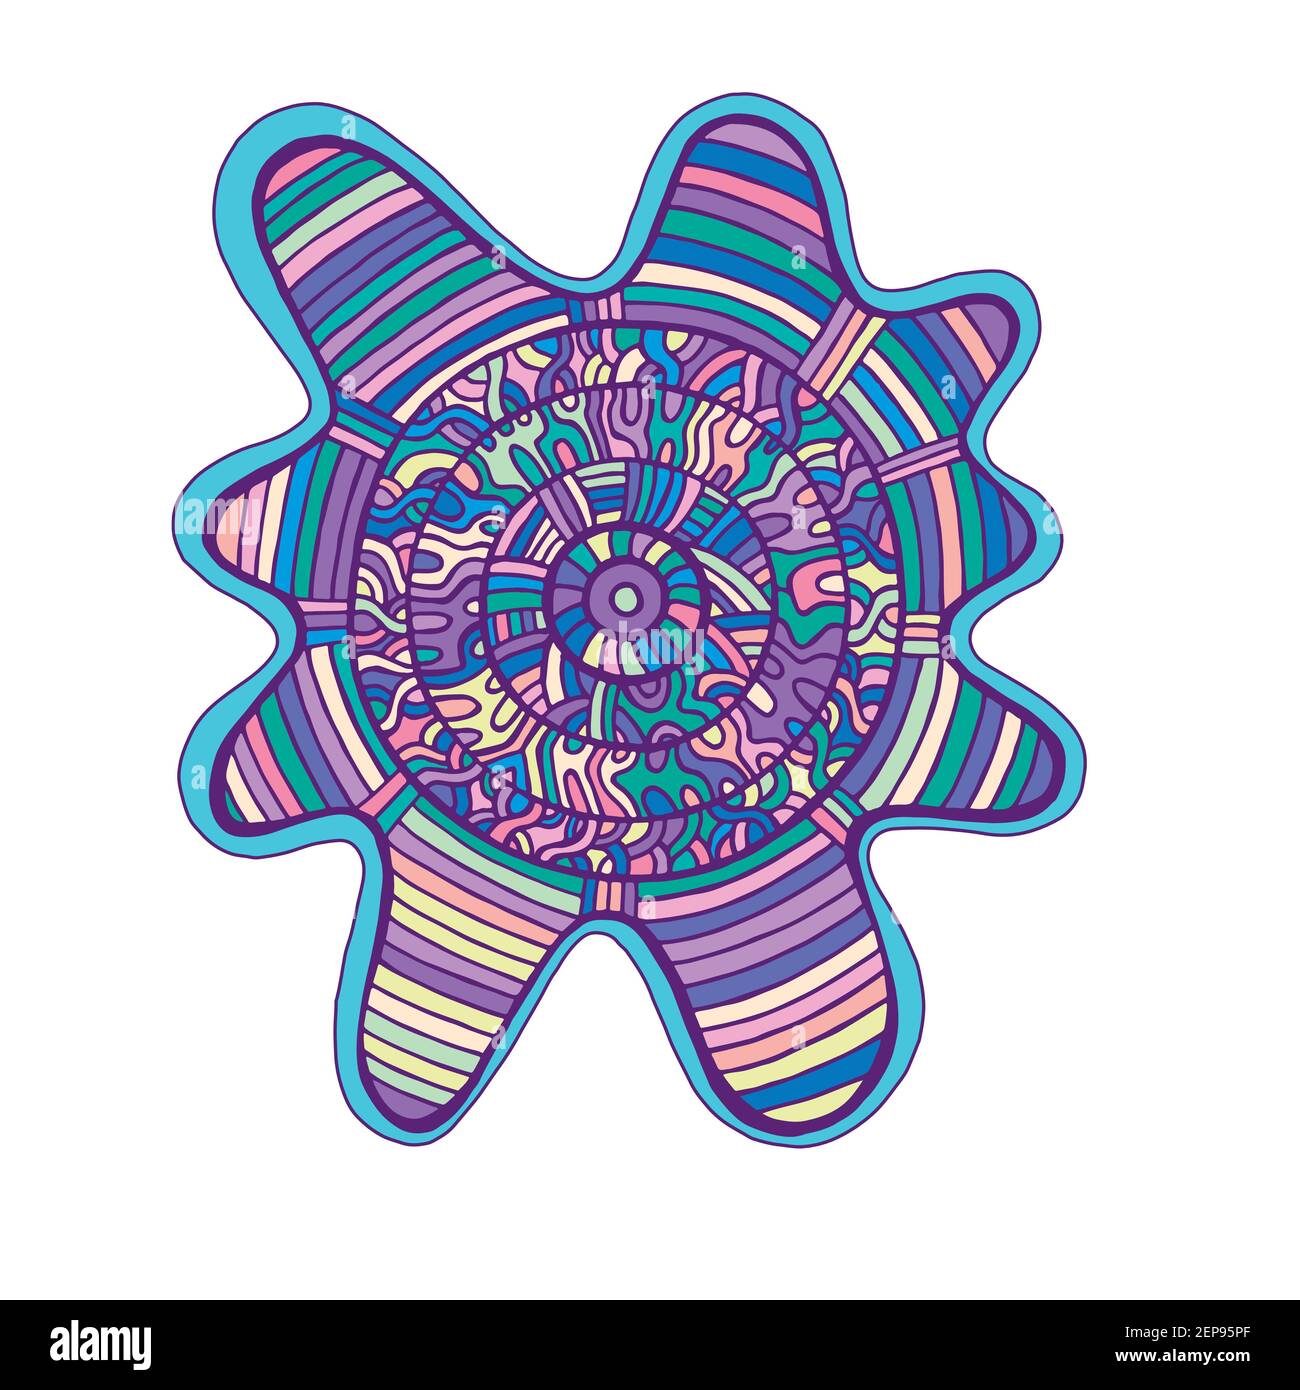 Abstrakt bunten Mandala, mit Kreis Muster Labyrinth von Ornamenten. Psychedelischer Doodle-Stil. Vektor handgezeichnete Illustration Hintergrund. Stock Vektor